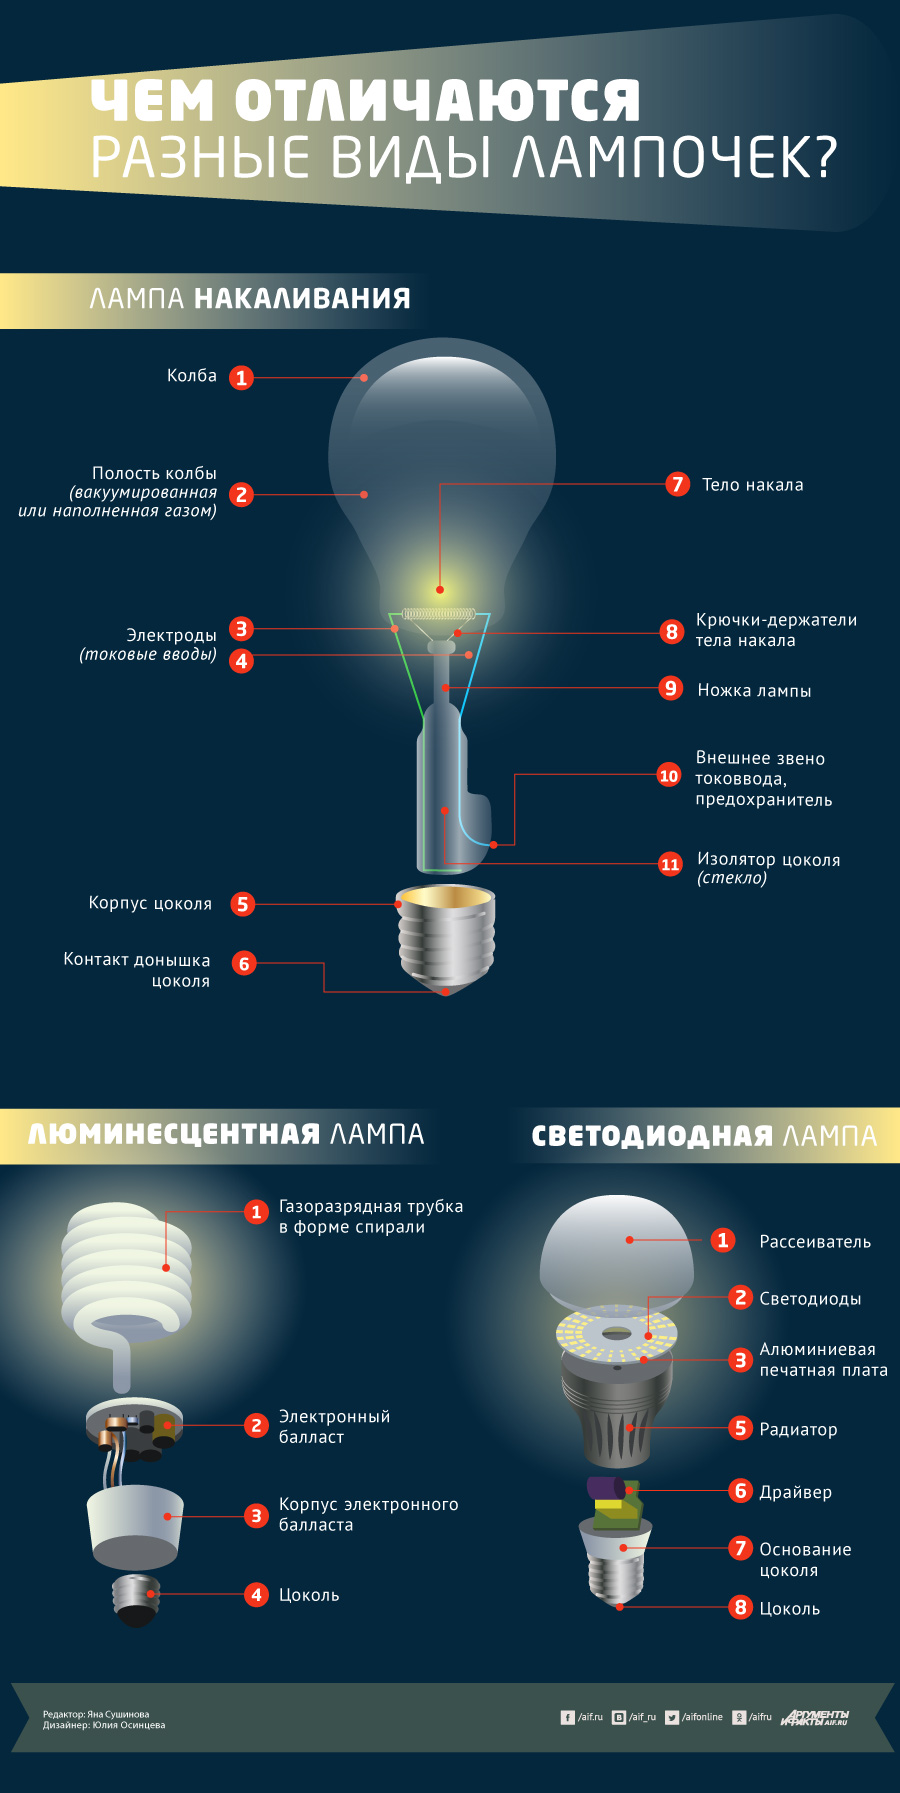 Типы света светодиодных ламп. Света светодиодная лампа светодиодная лампа лампа. Лампы накаливания галогенная люминесцентная светодиодная. Основные типы ламп технология. Типы светодиодных ламп.